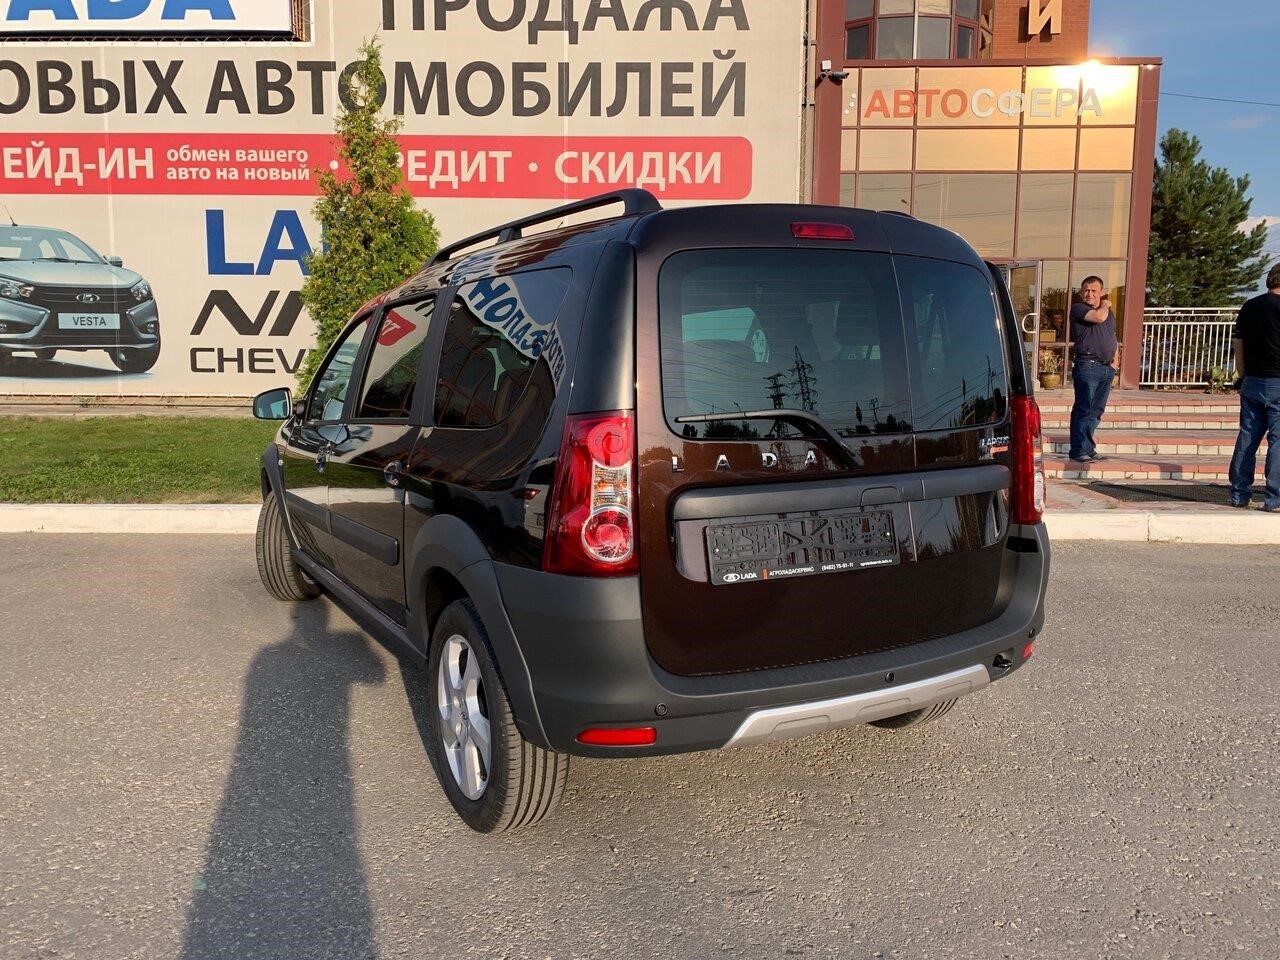 Купить Авто в Тольятти улица Маршала Жукова, 54Б